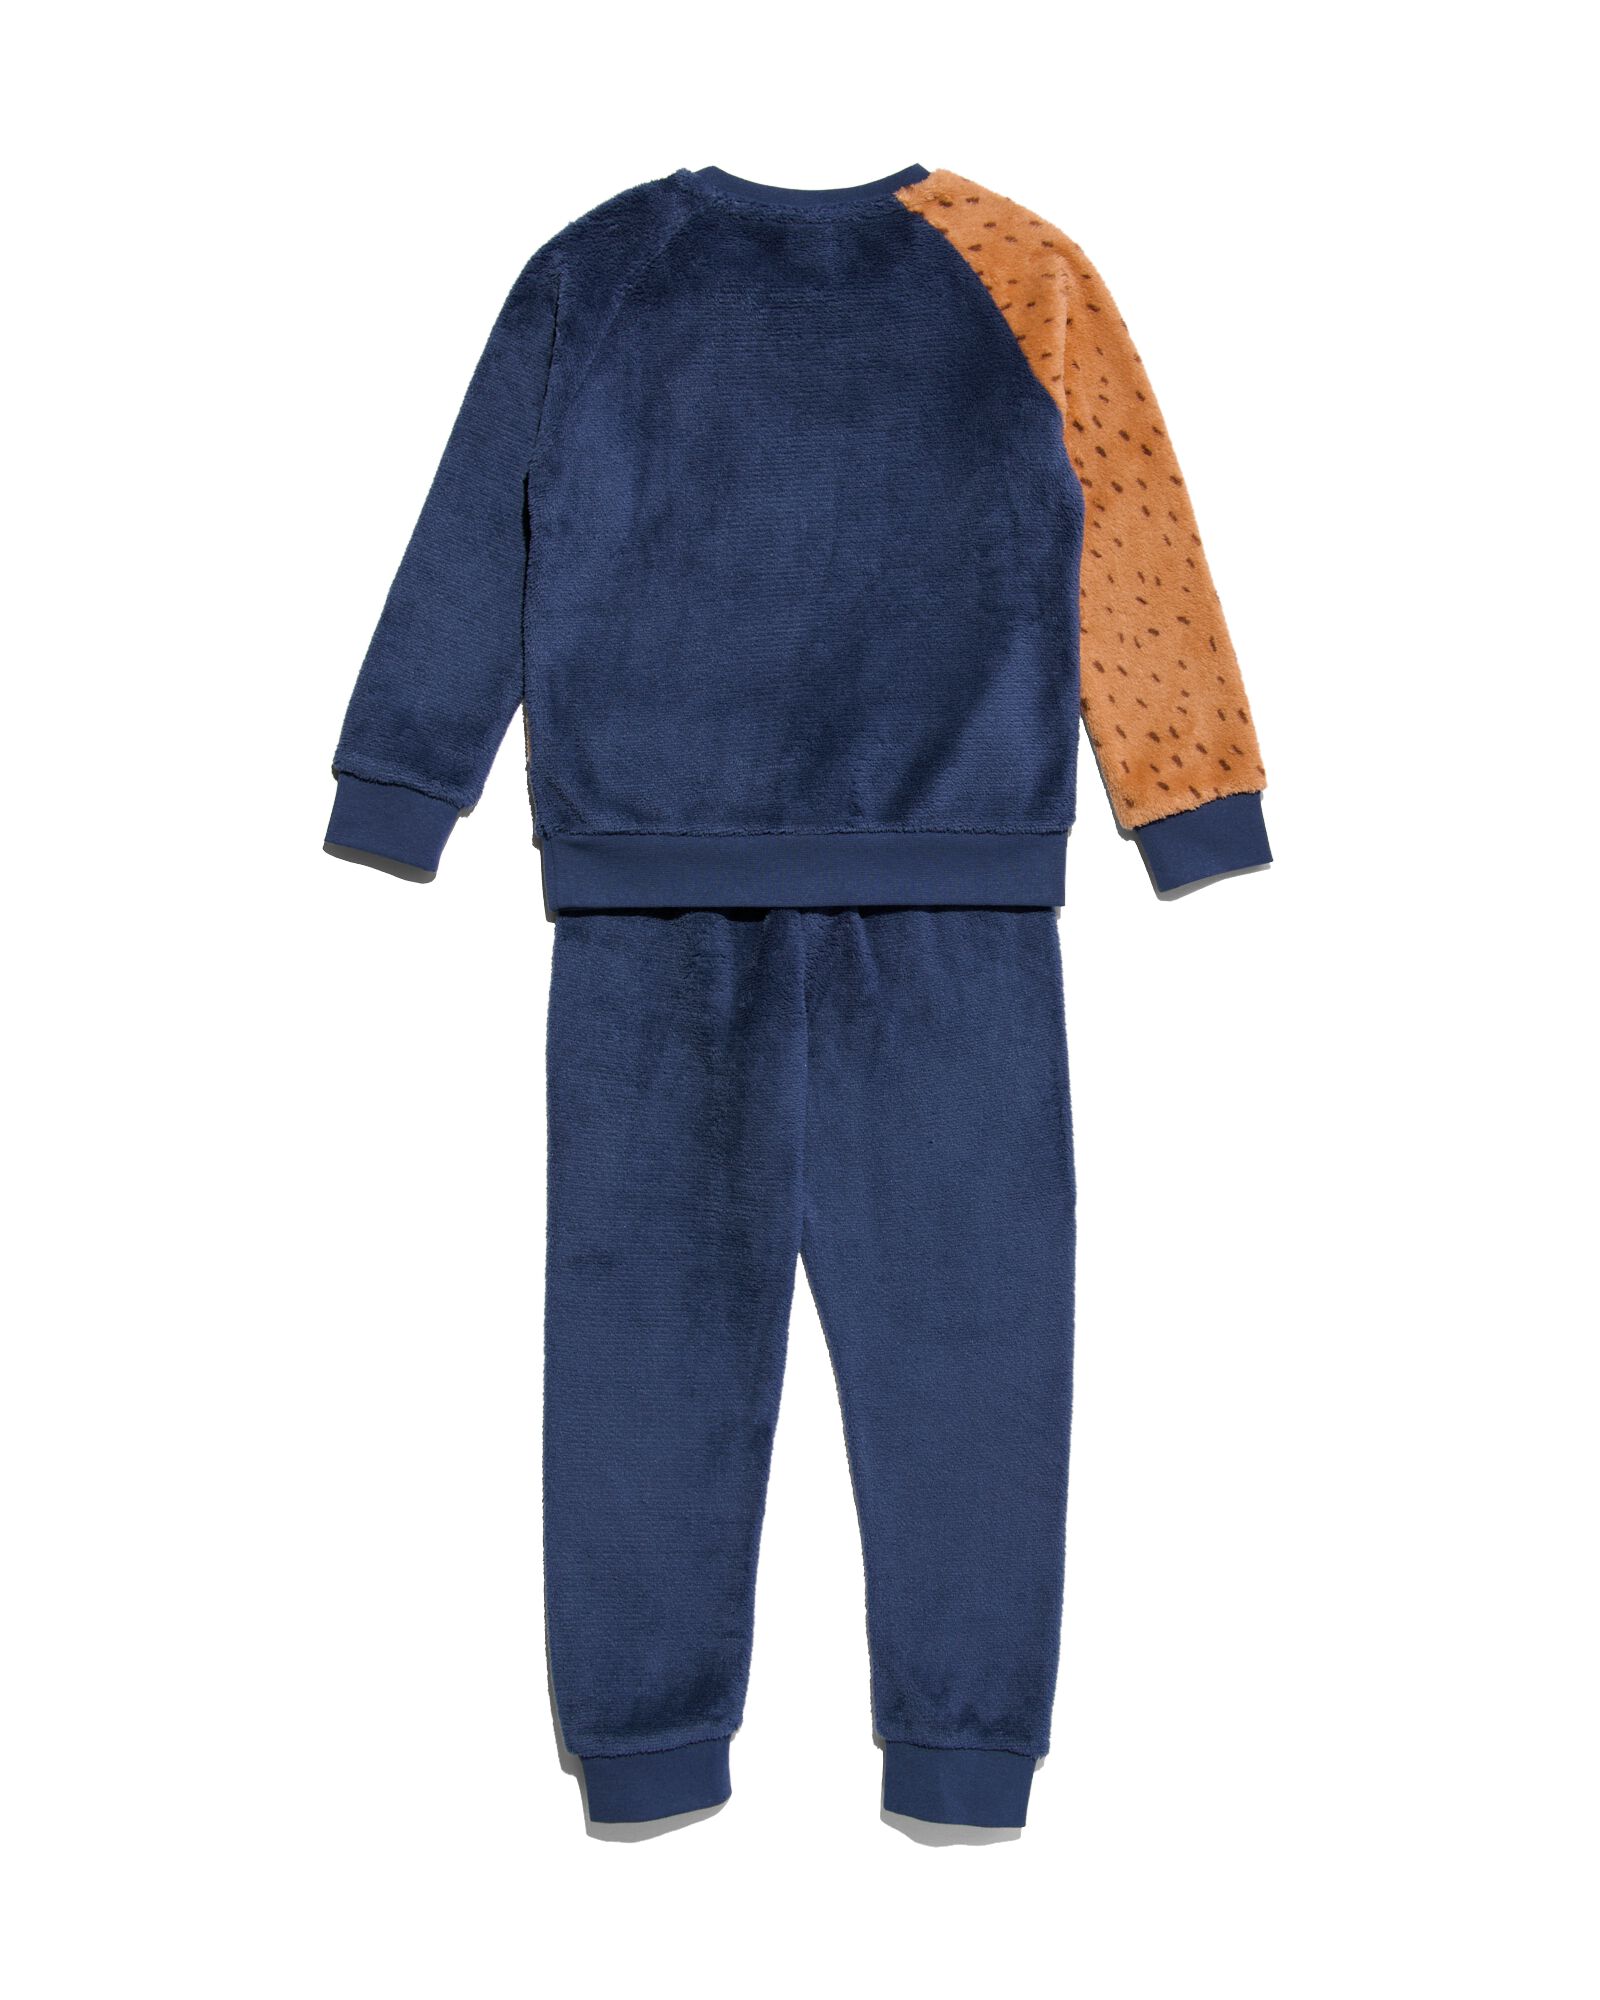 pyjama enfant polaire chien bleu foncé 146/152 - 23030486 - HEMA